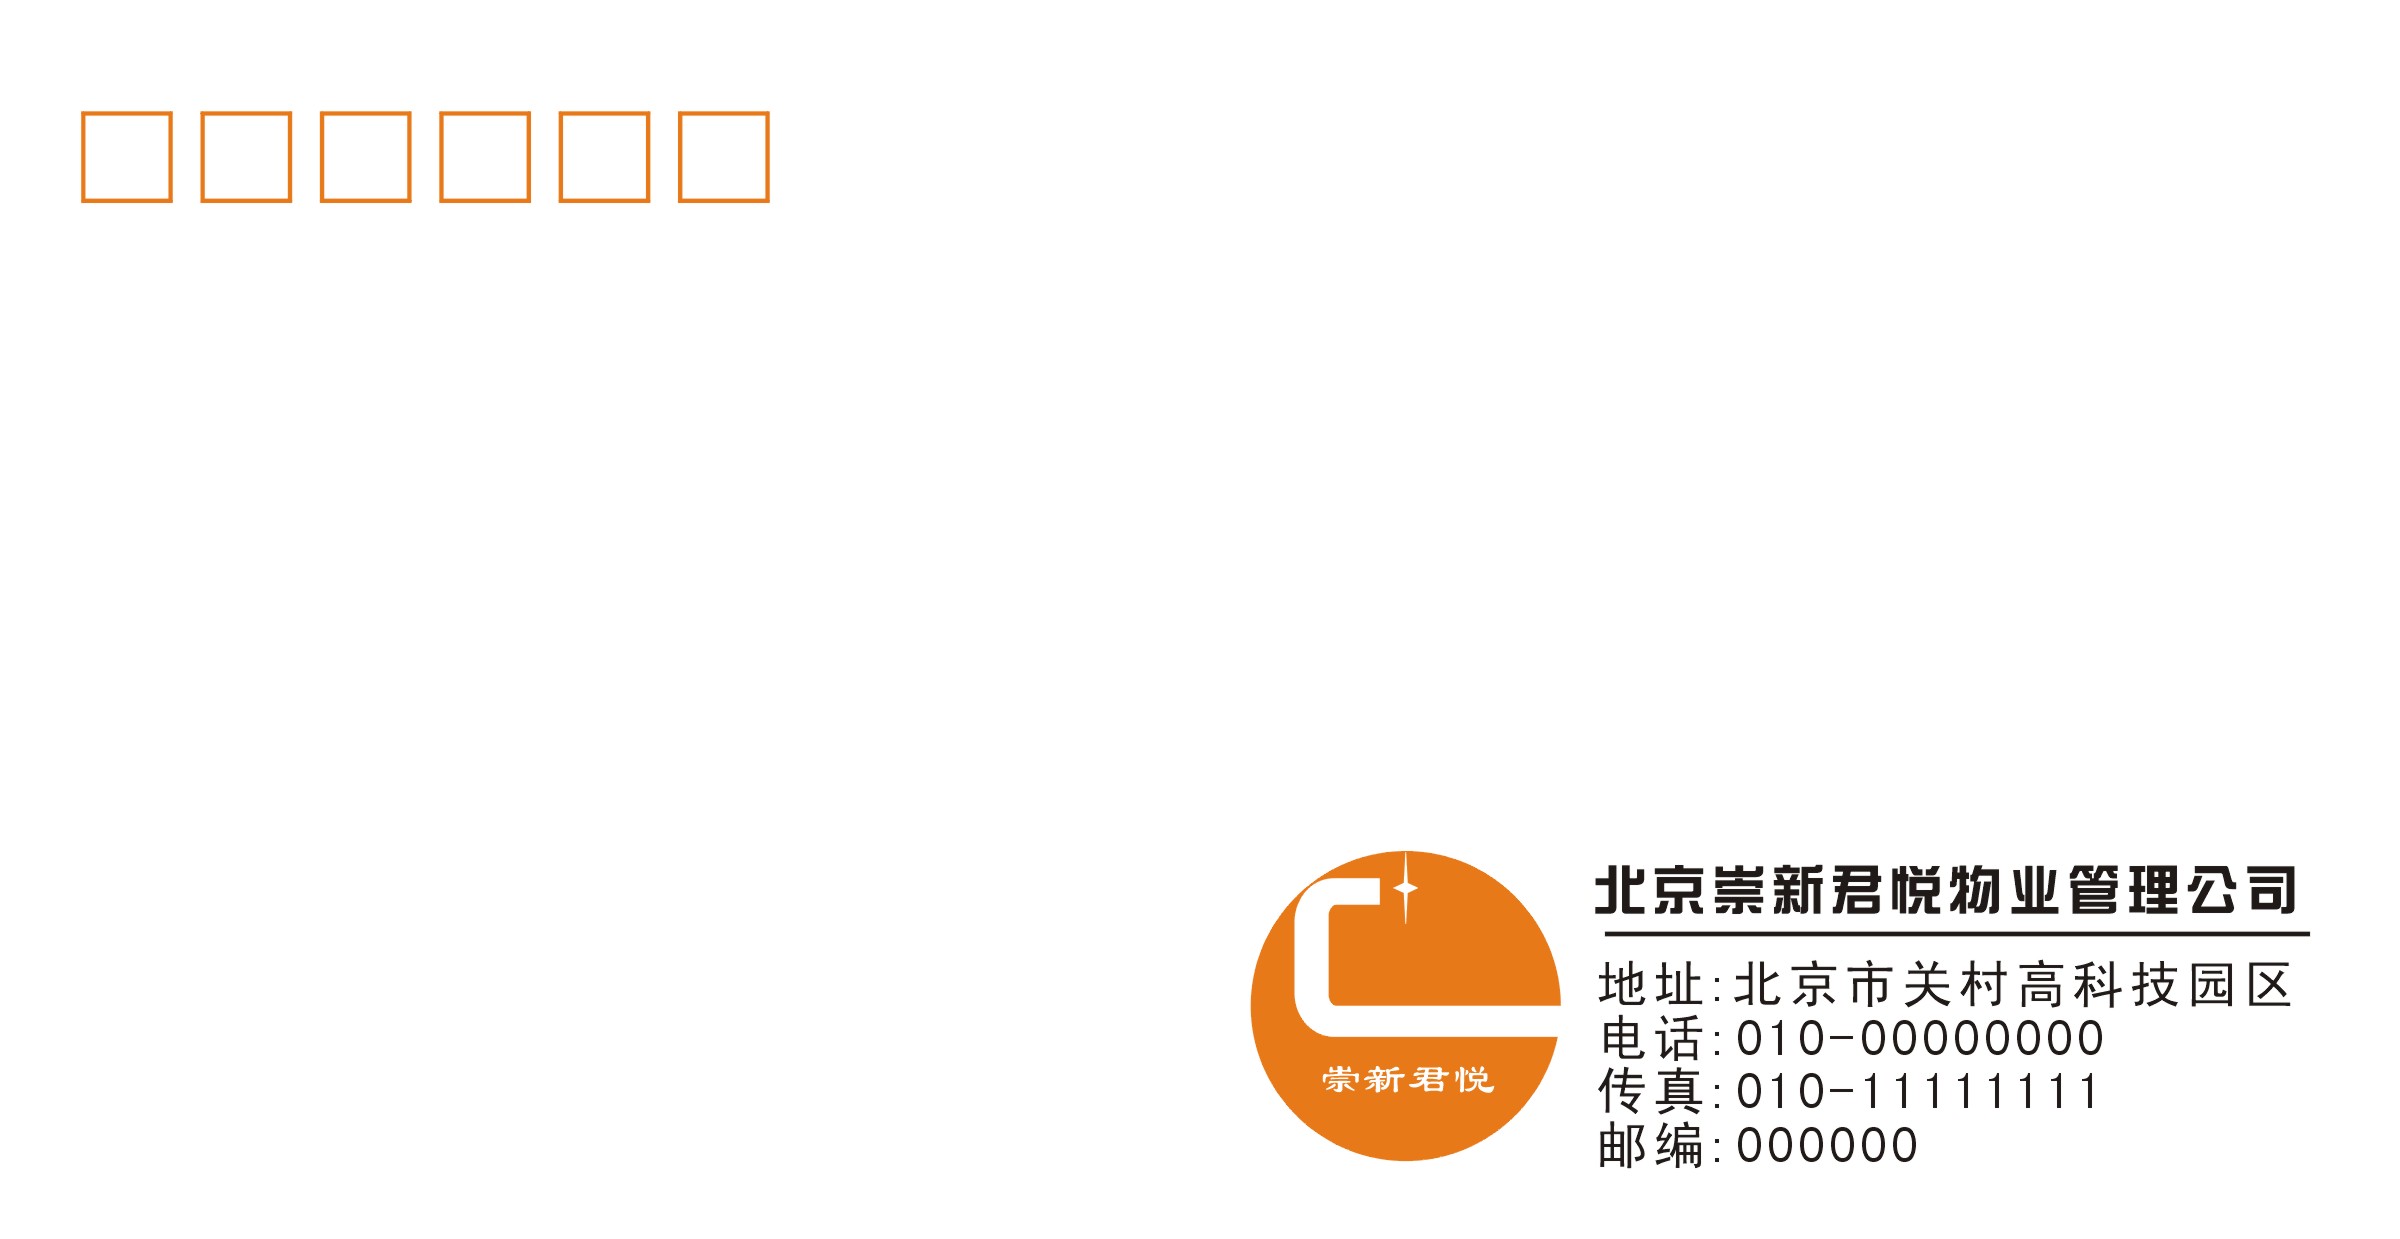 北京崇新君悦物业管理公司logo及相关VI(奖金